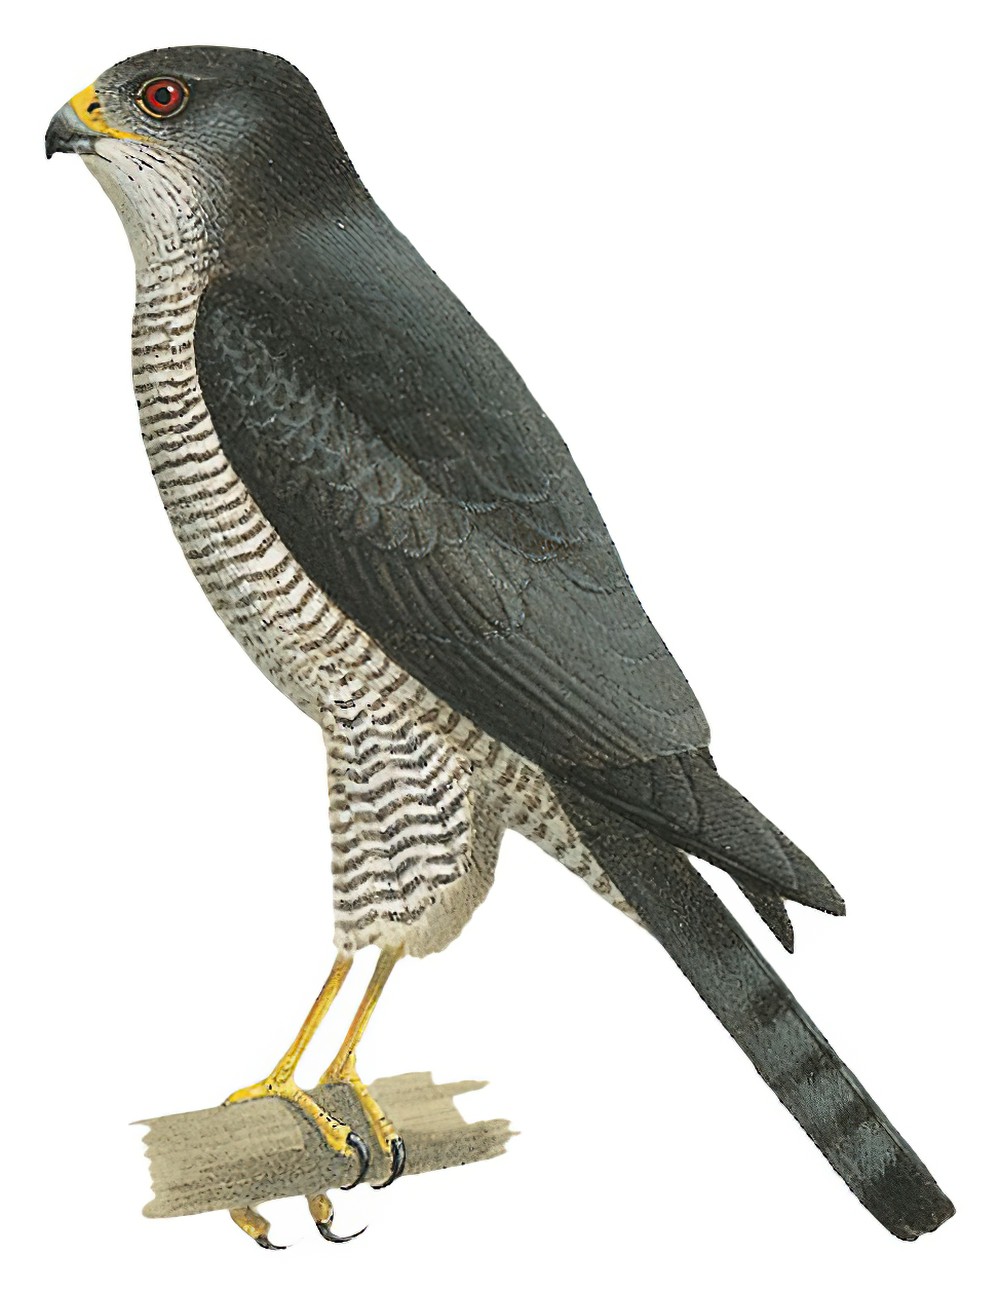 Tiny Hawk / Accipiter superciliosus